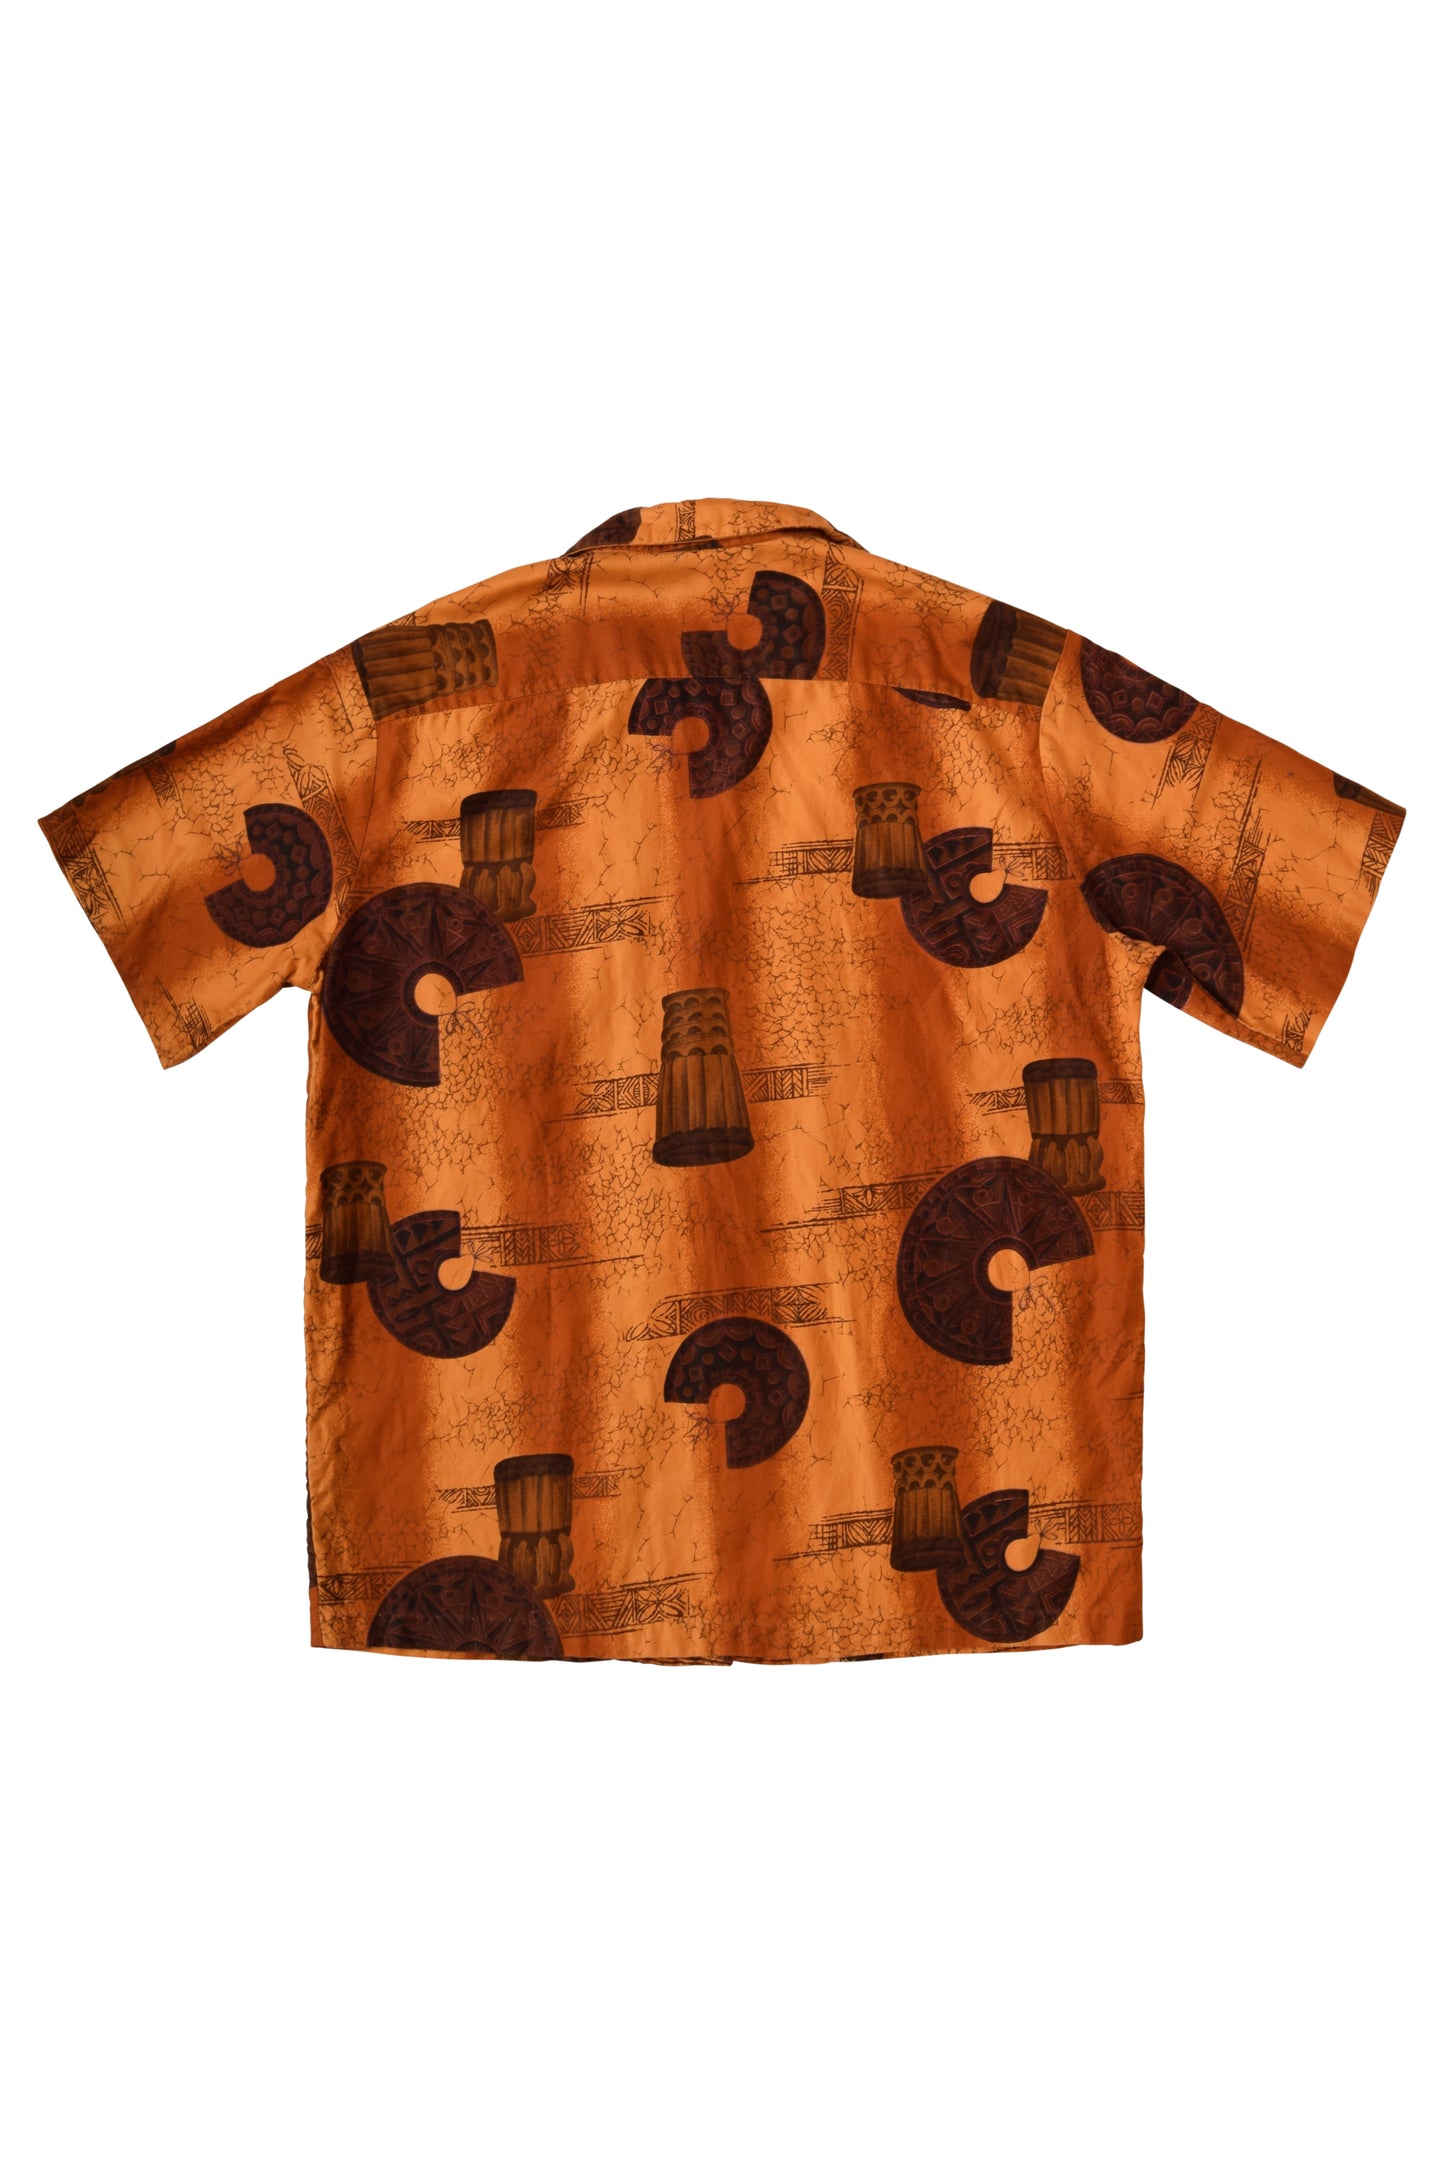 Vintage Reef Hawaiian Shirt 90's Made in Hawaii Size M-L